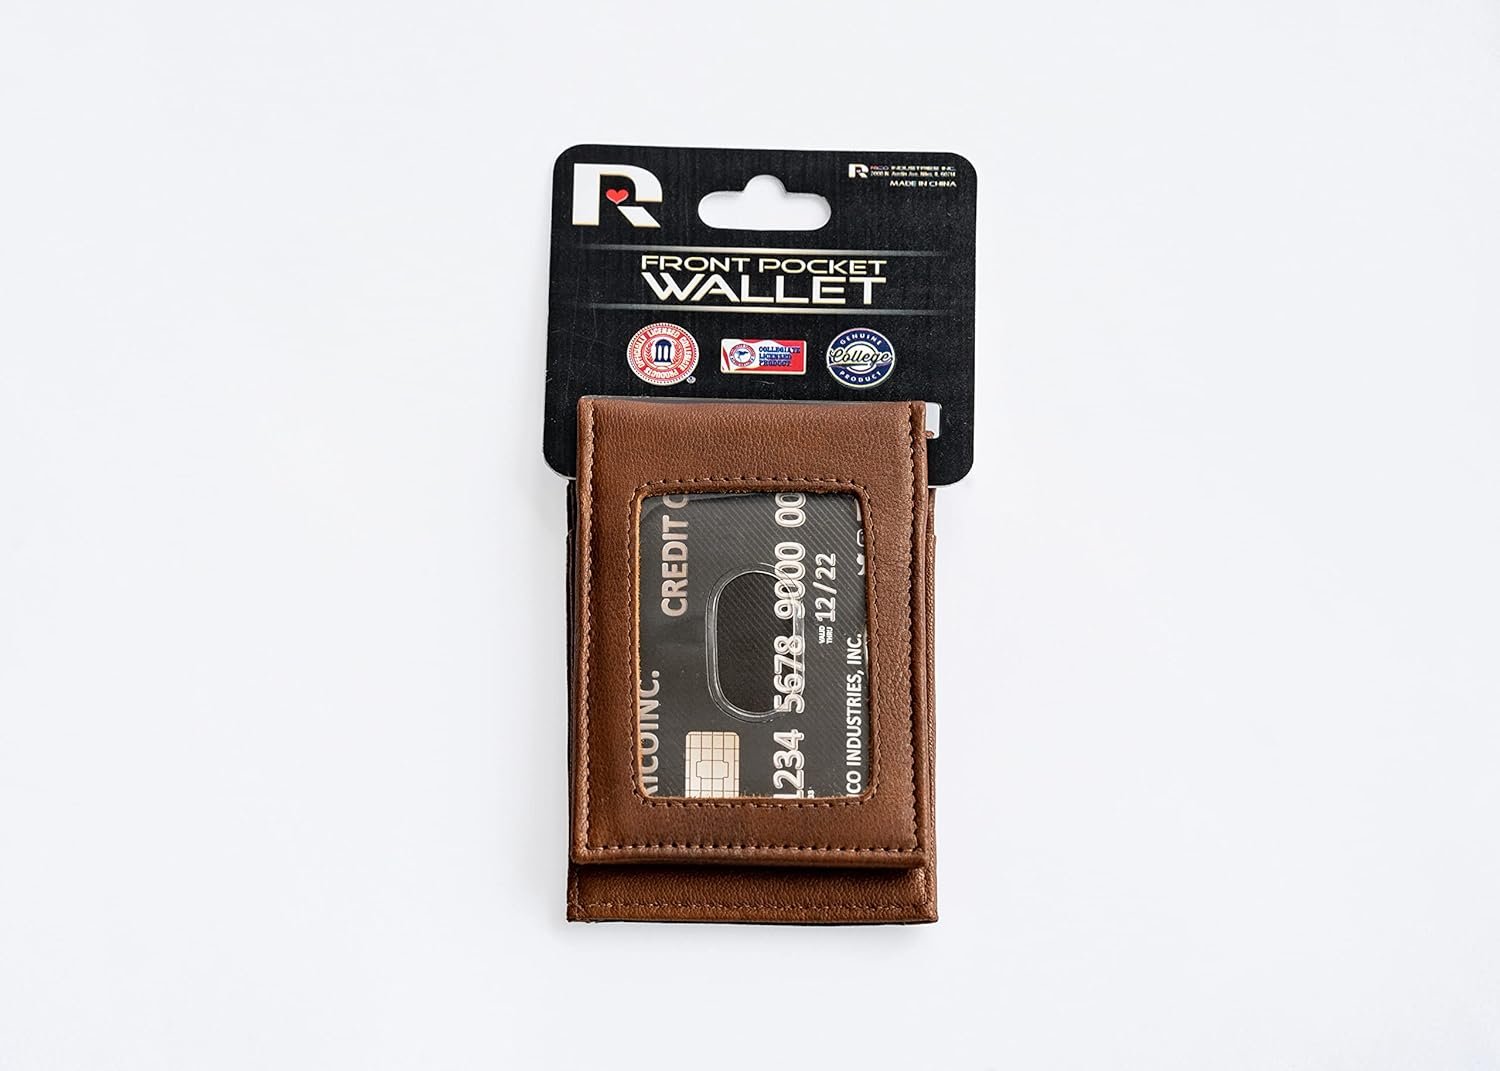 Vegas Golden Knights Premium Brown Leather Wallet, Front Pocket Magnetic Money Clip, Laser Engraved, Vegan